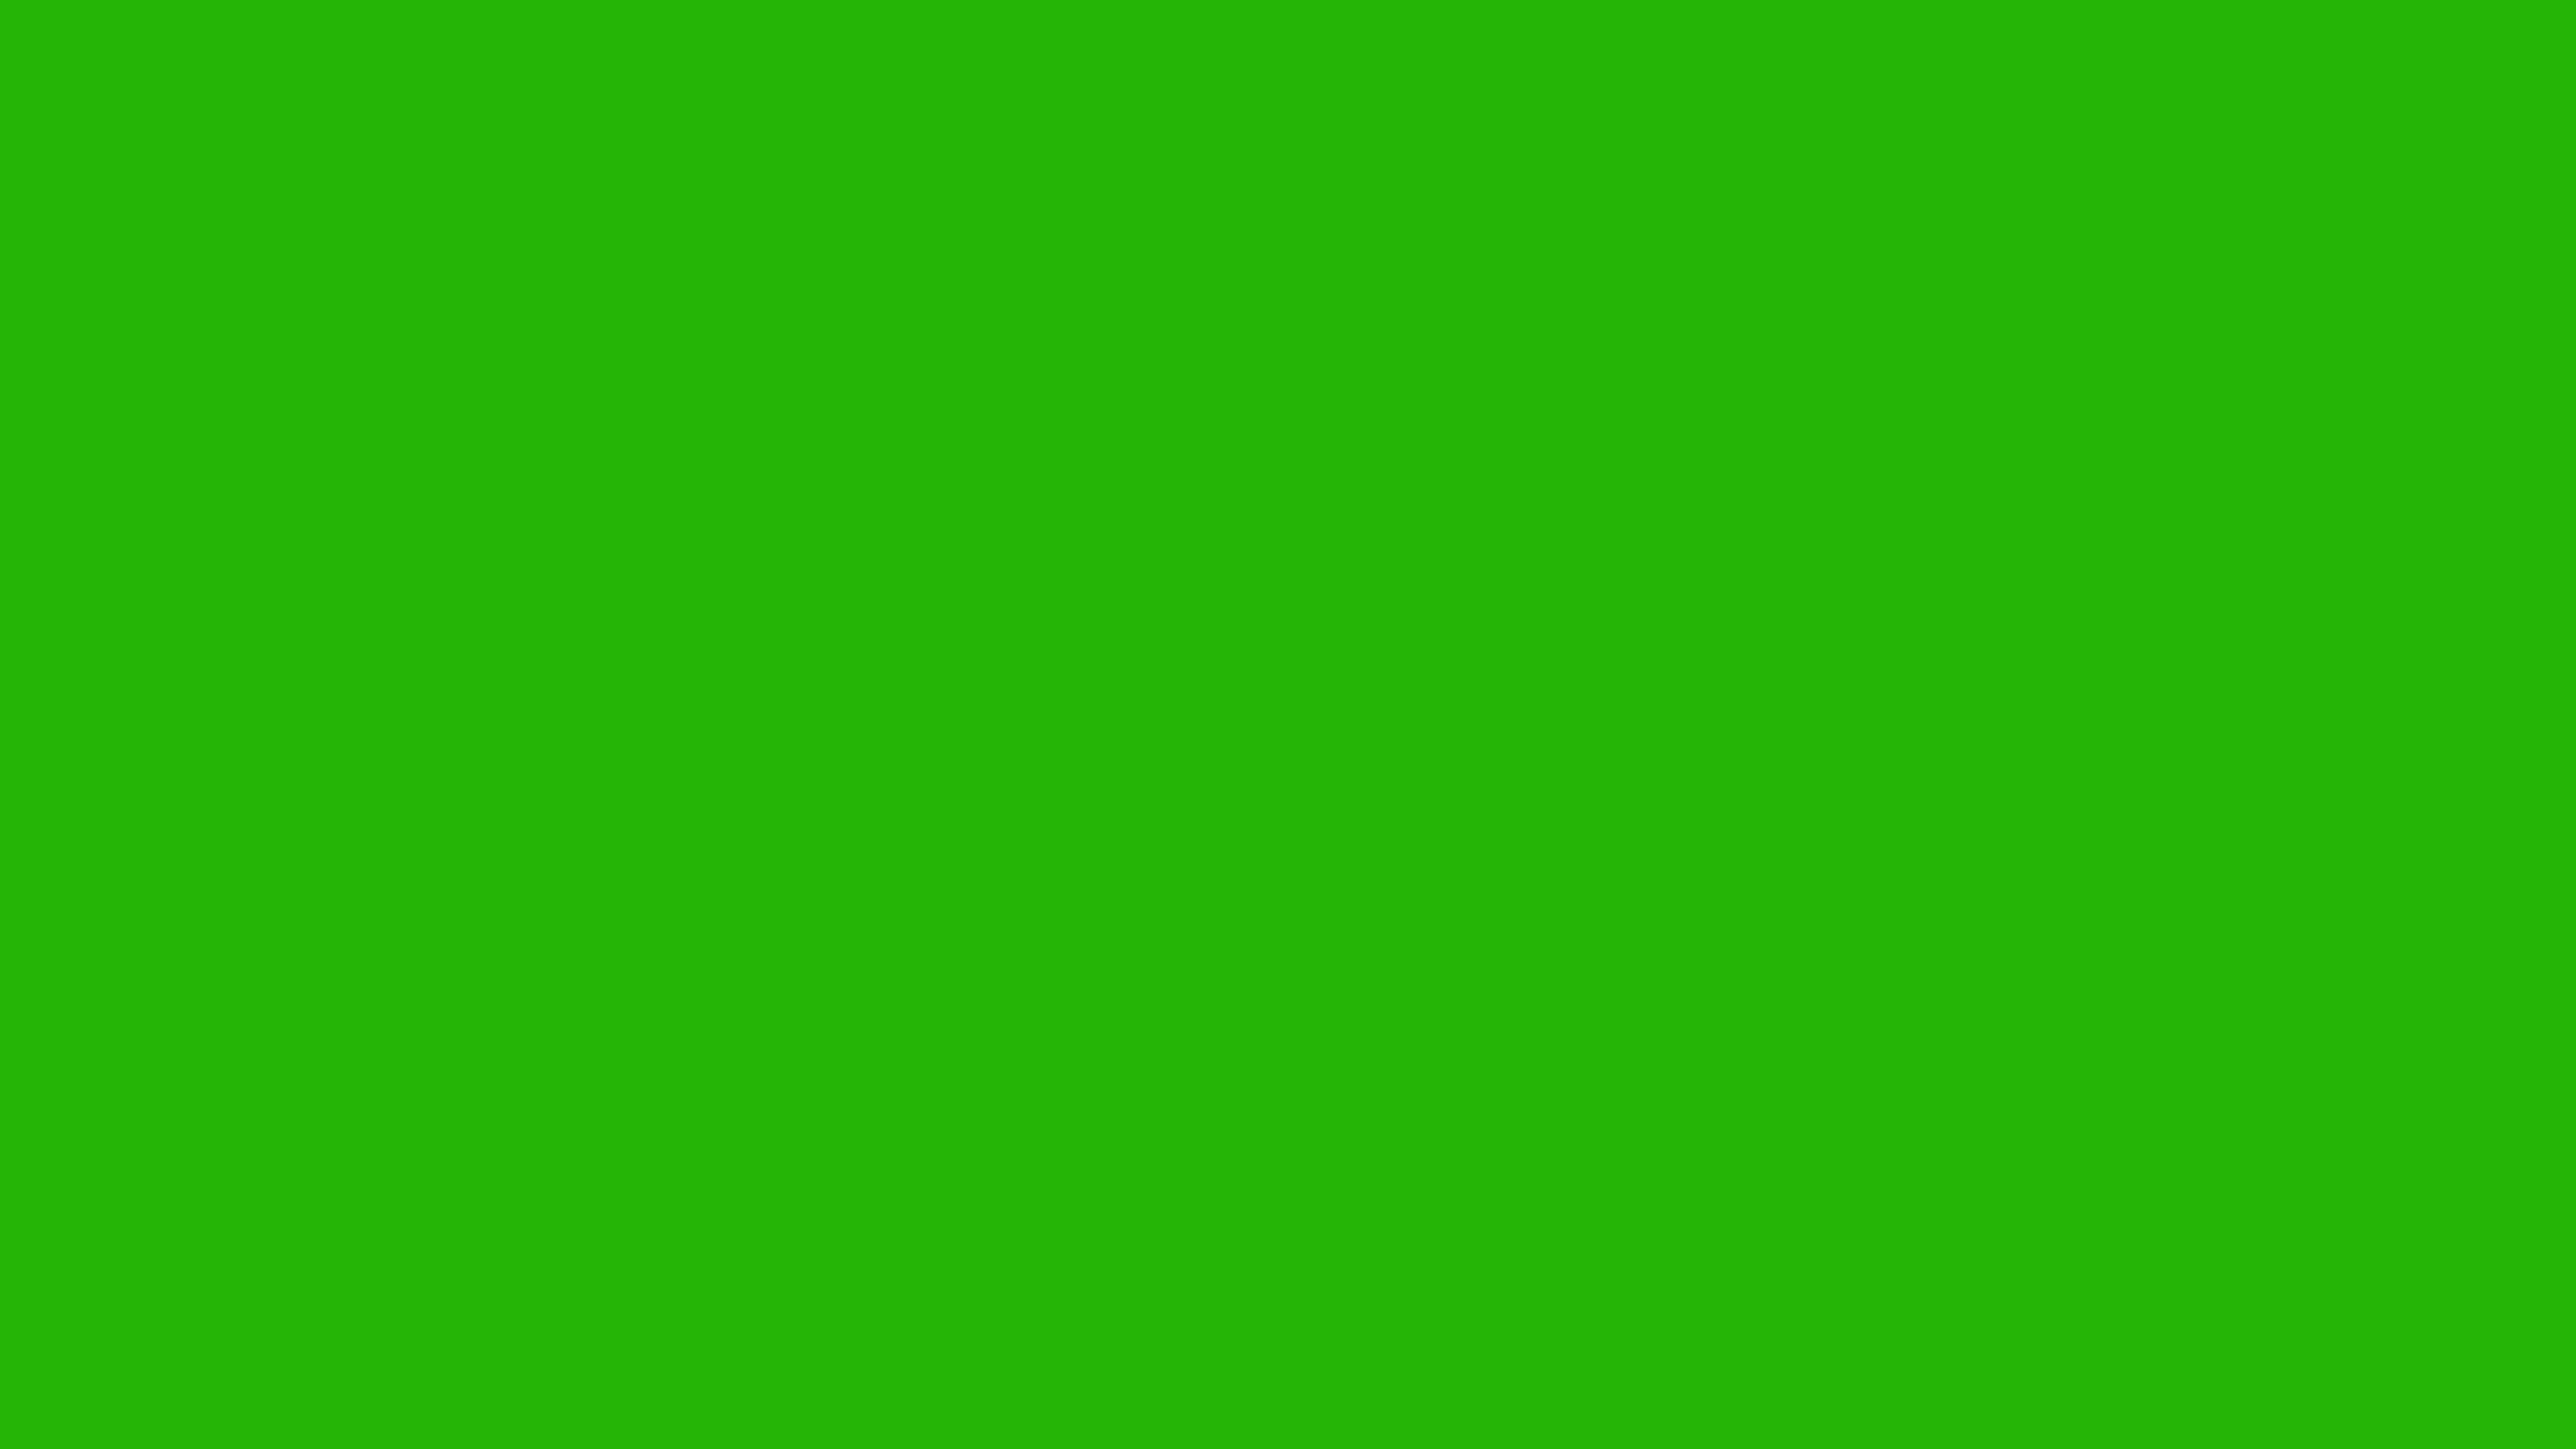 Những video transition phông nền xanh lá cây sẽ giúp bạn kết nối những cảnh quay một cách mượt mà và chuyên nghiệp. Tải miễn phí video transition và phông nền sân khấu xanh lá cây để đem đến cho video của bạn một không gian sống động và tươi trẻ. Với 4k độ phân giải, hình ảnh sẽ sắc nét và chân thực hơn bao giờ hết.